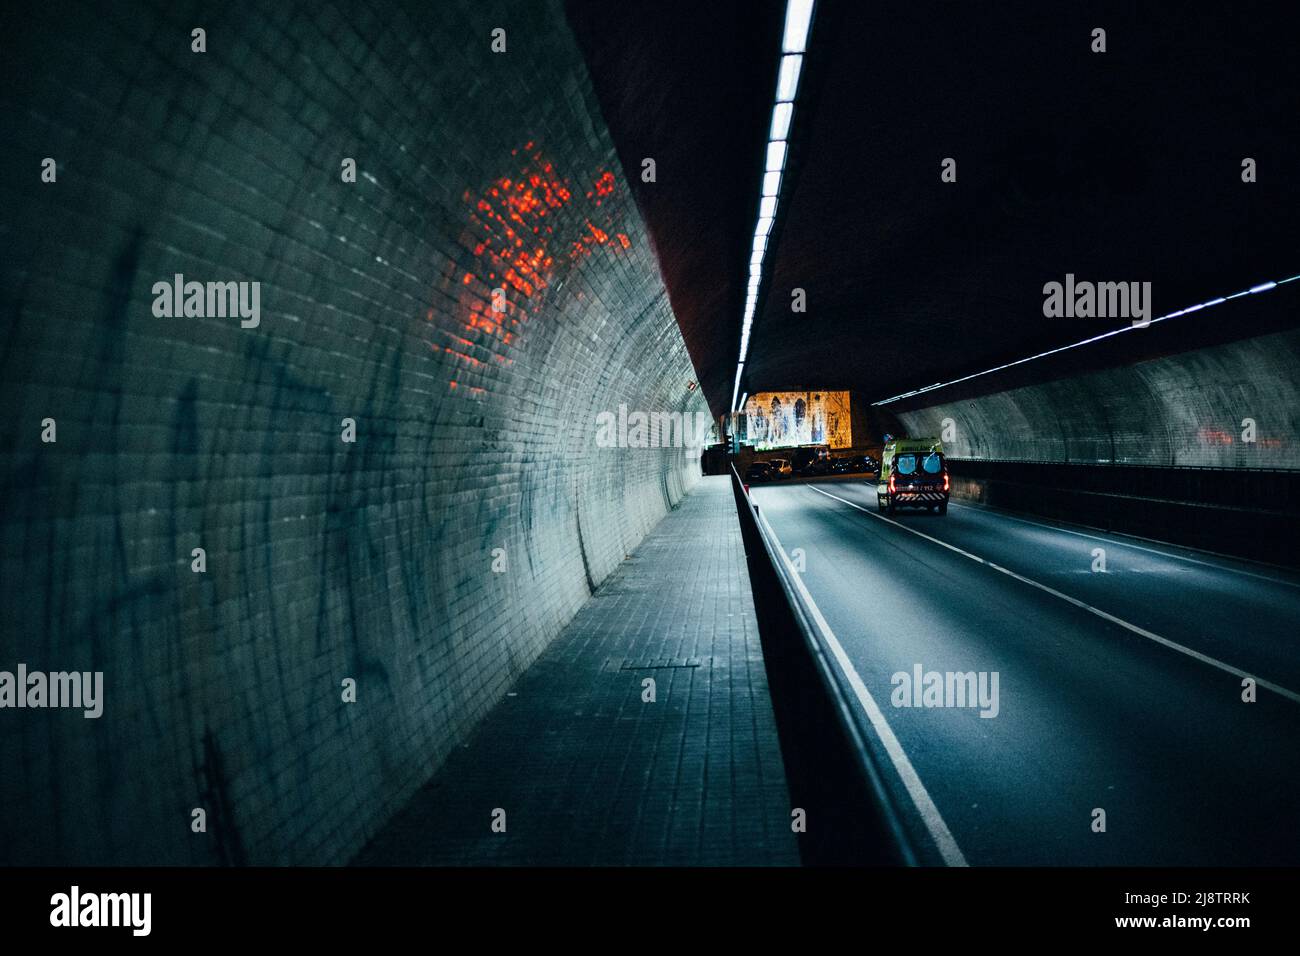 Porto, Portugal, 10.04.22: Nachtleben in Porto, langer Tunnel mit einem Rettungswagen. Foto: pressefoto Mika Volkmann Stockfoto